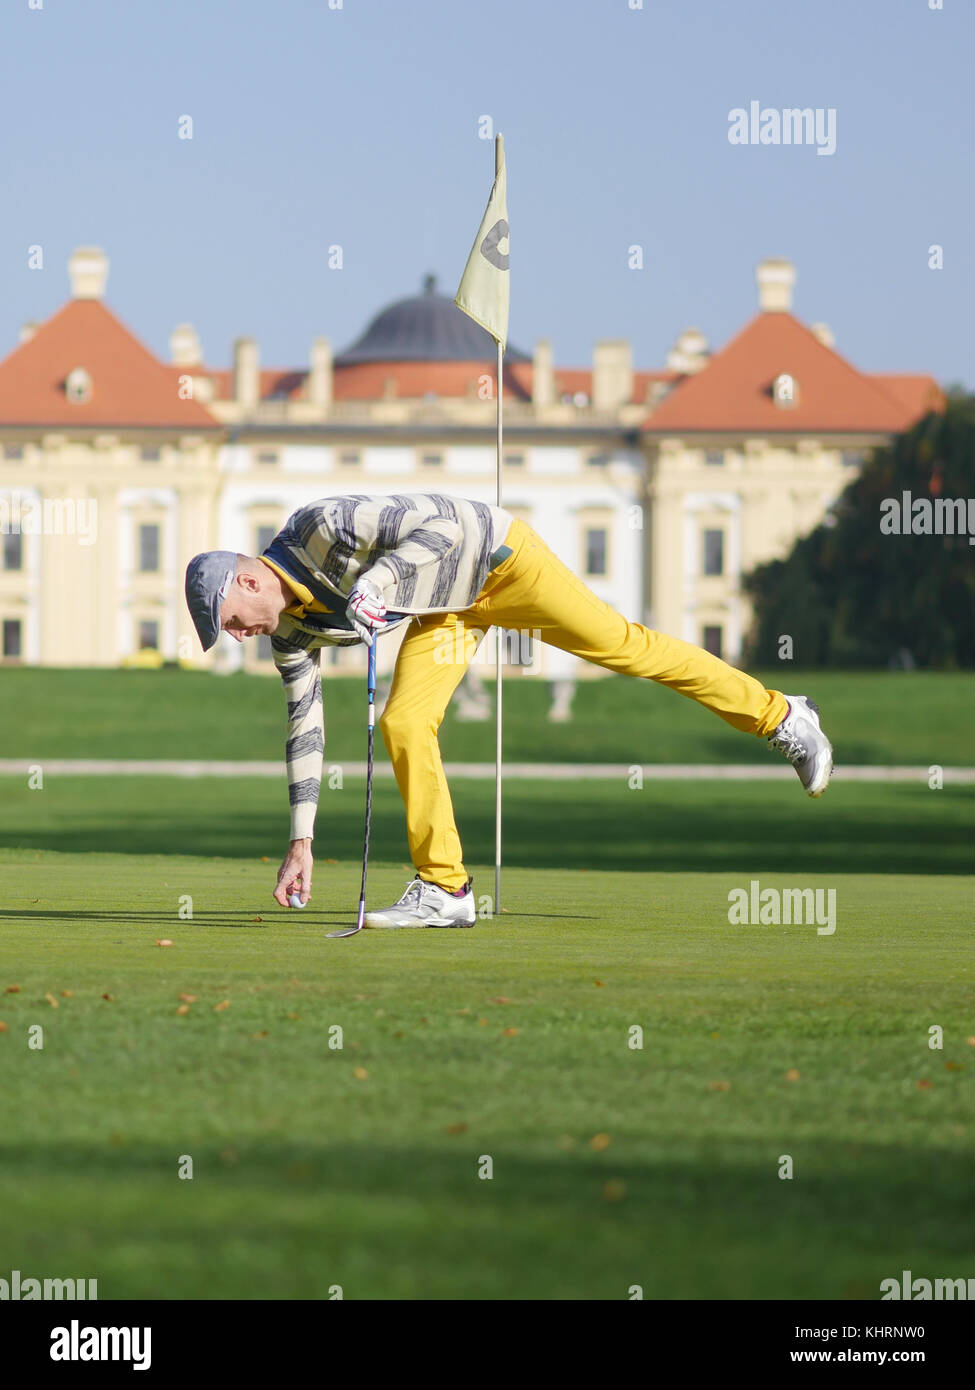 Professioneller Golfspieler den Ball aufnehmen, die von den Grünen in einem Turnier. Stockfoto